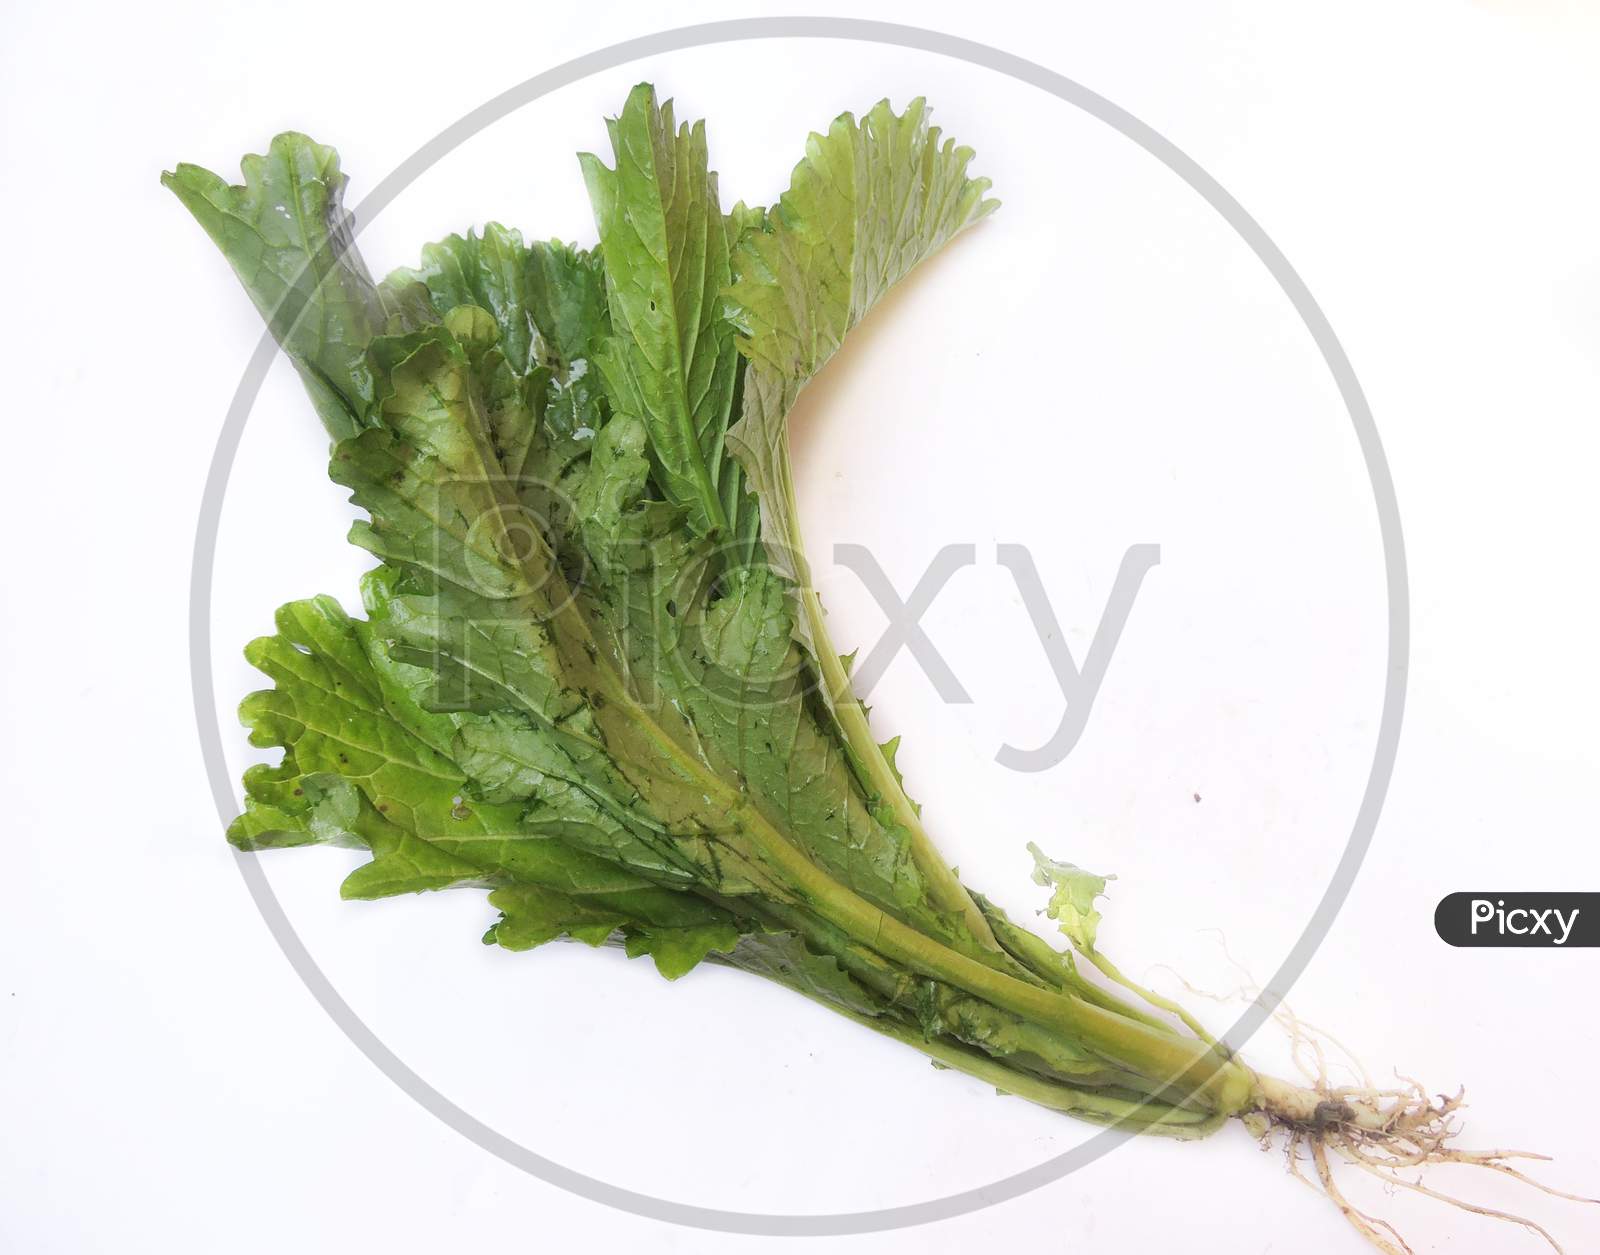 Leafy vegetable - Vegetable mustard or Lai xaag